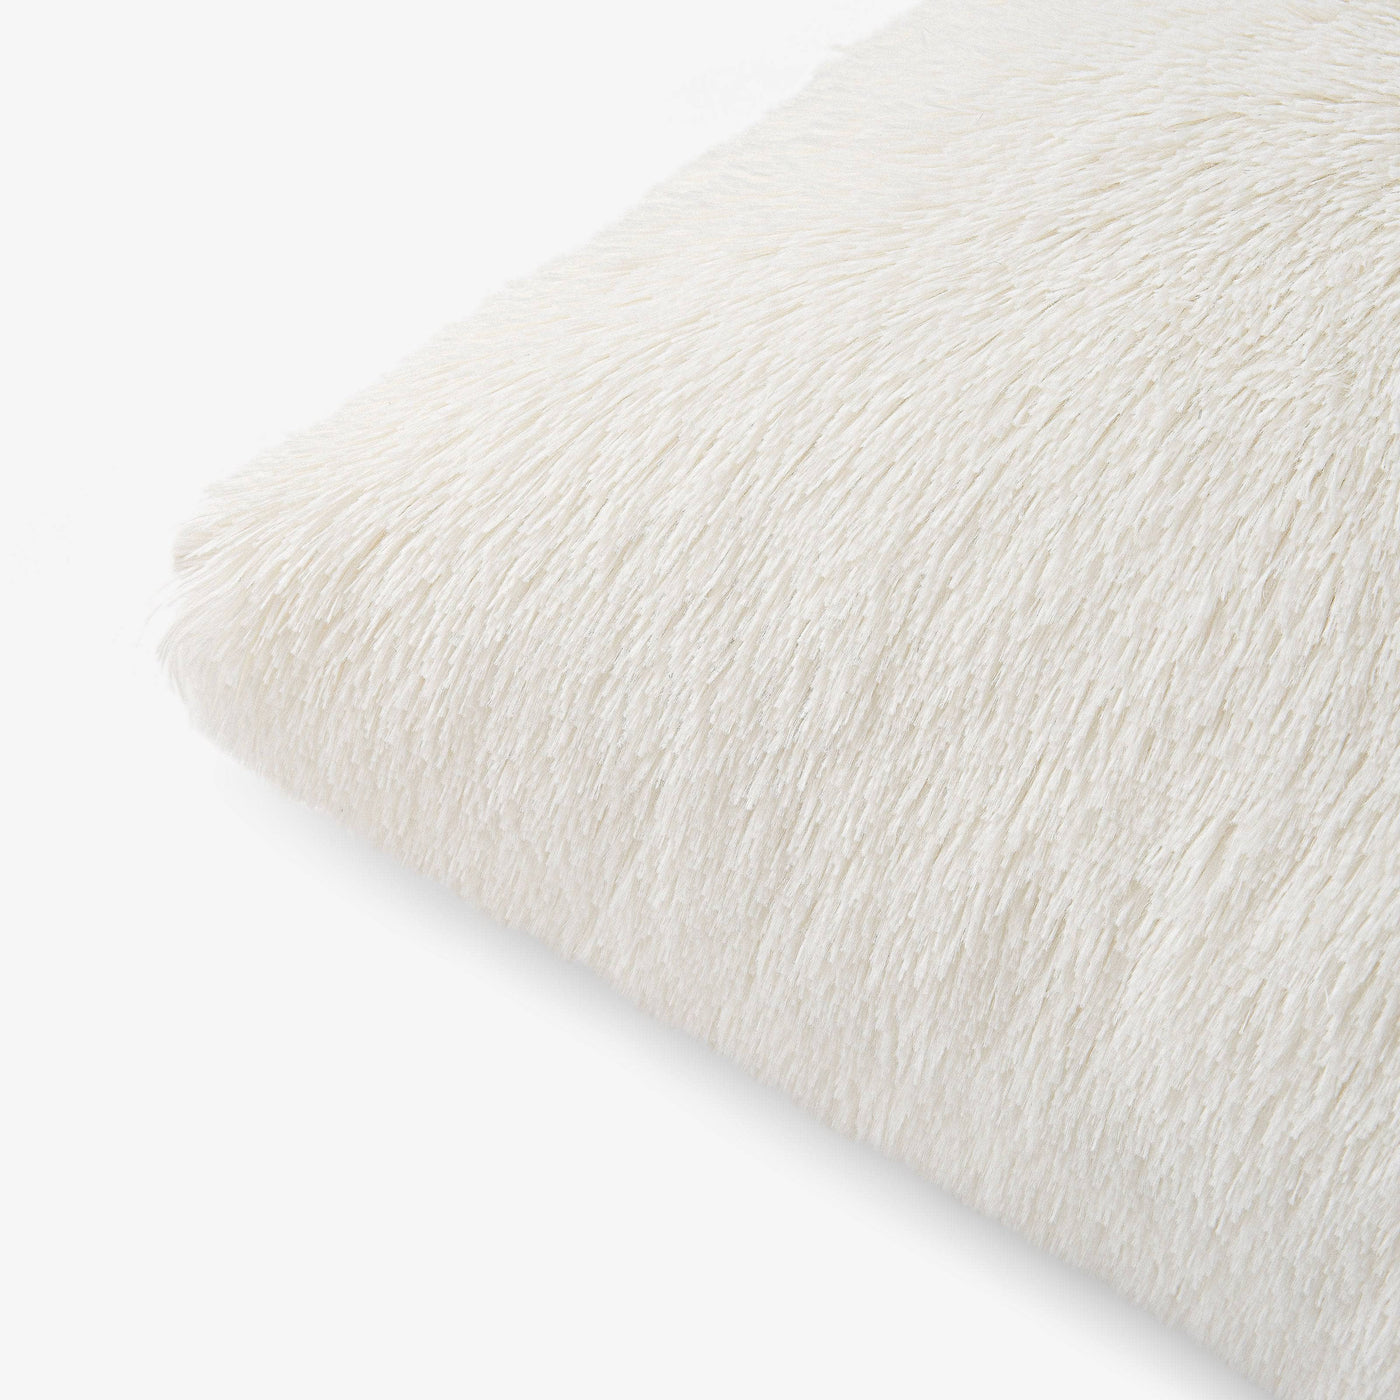 Cuddo Faux Fur Cushion Cover, Cream, 45x45 cm Cushion Covers sazy.com